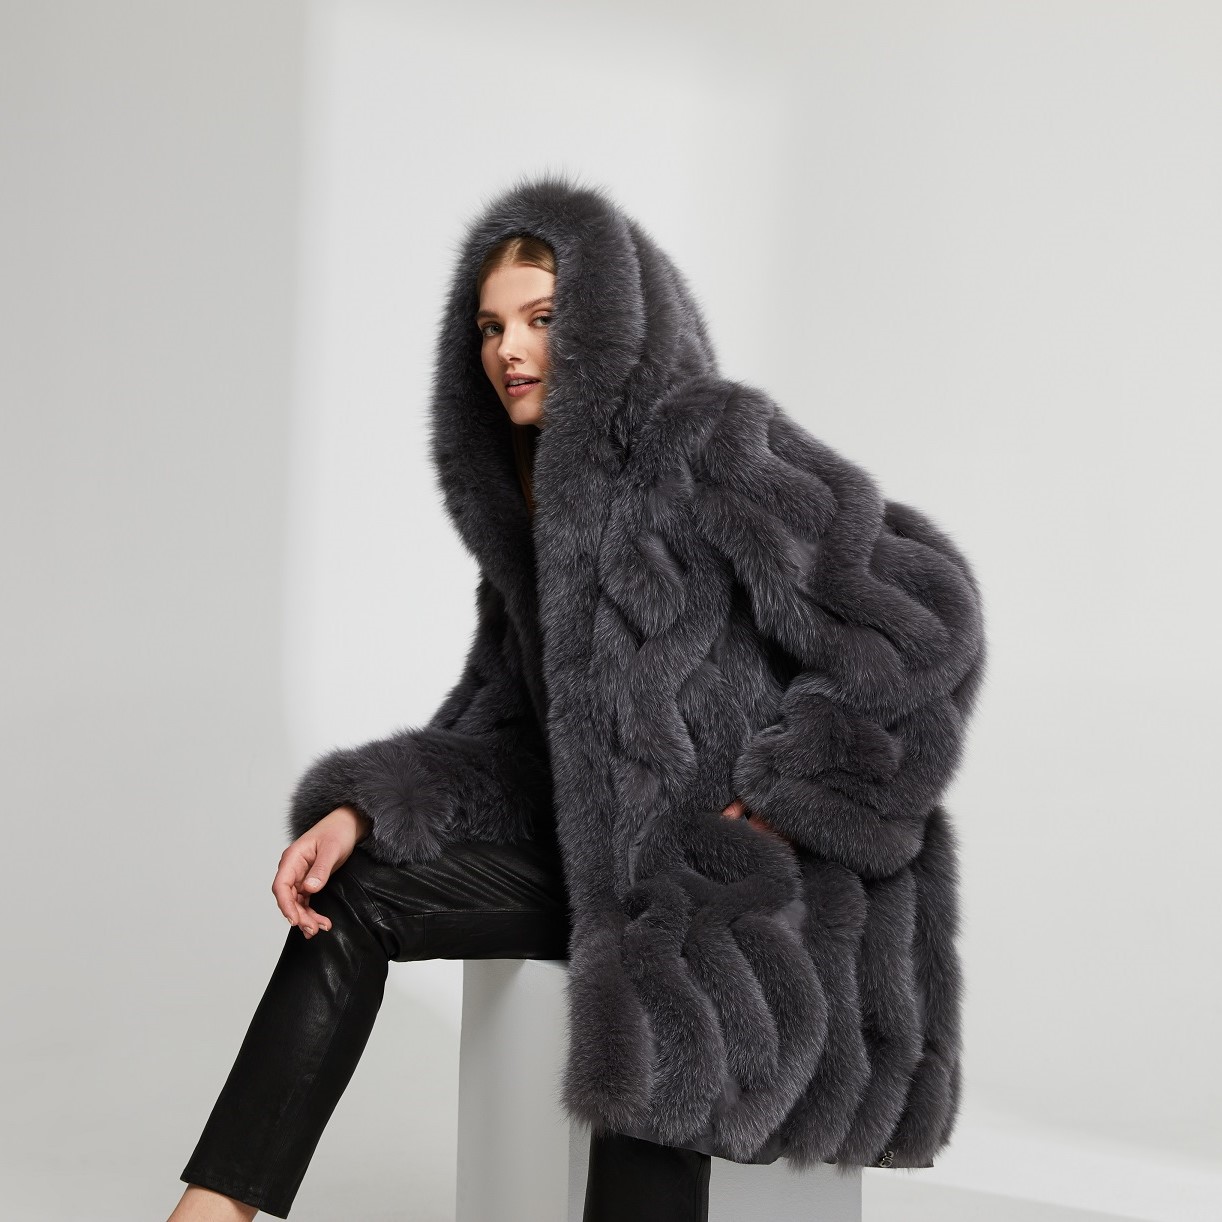 Fox fur coat, reevrsible